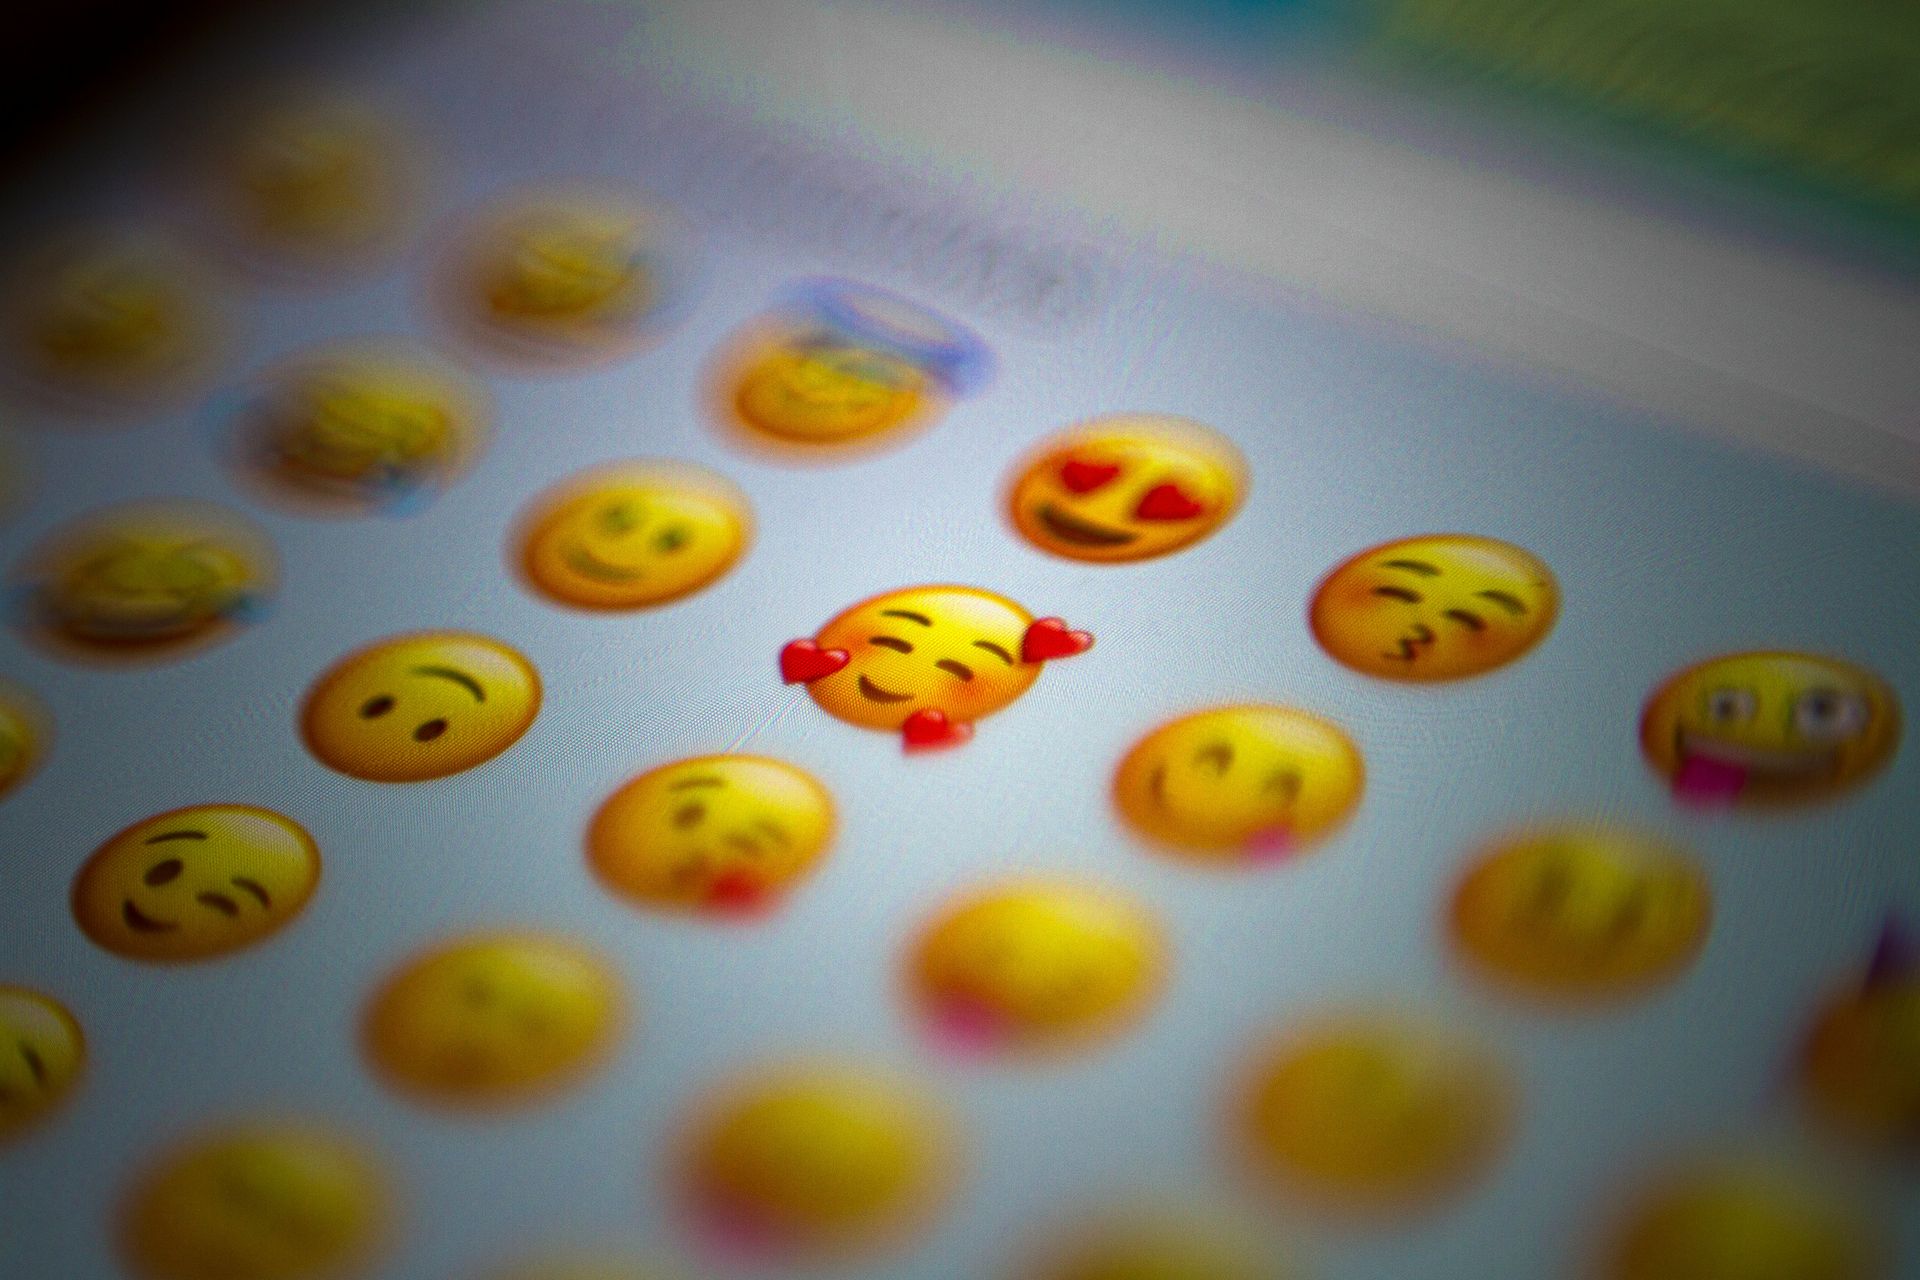 Come si utilizza la funzionalità del livello emoji di iMessage?